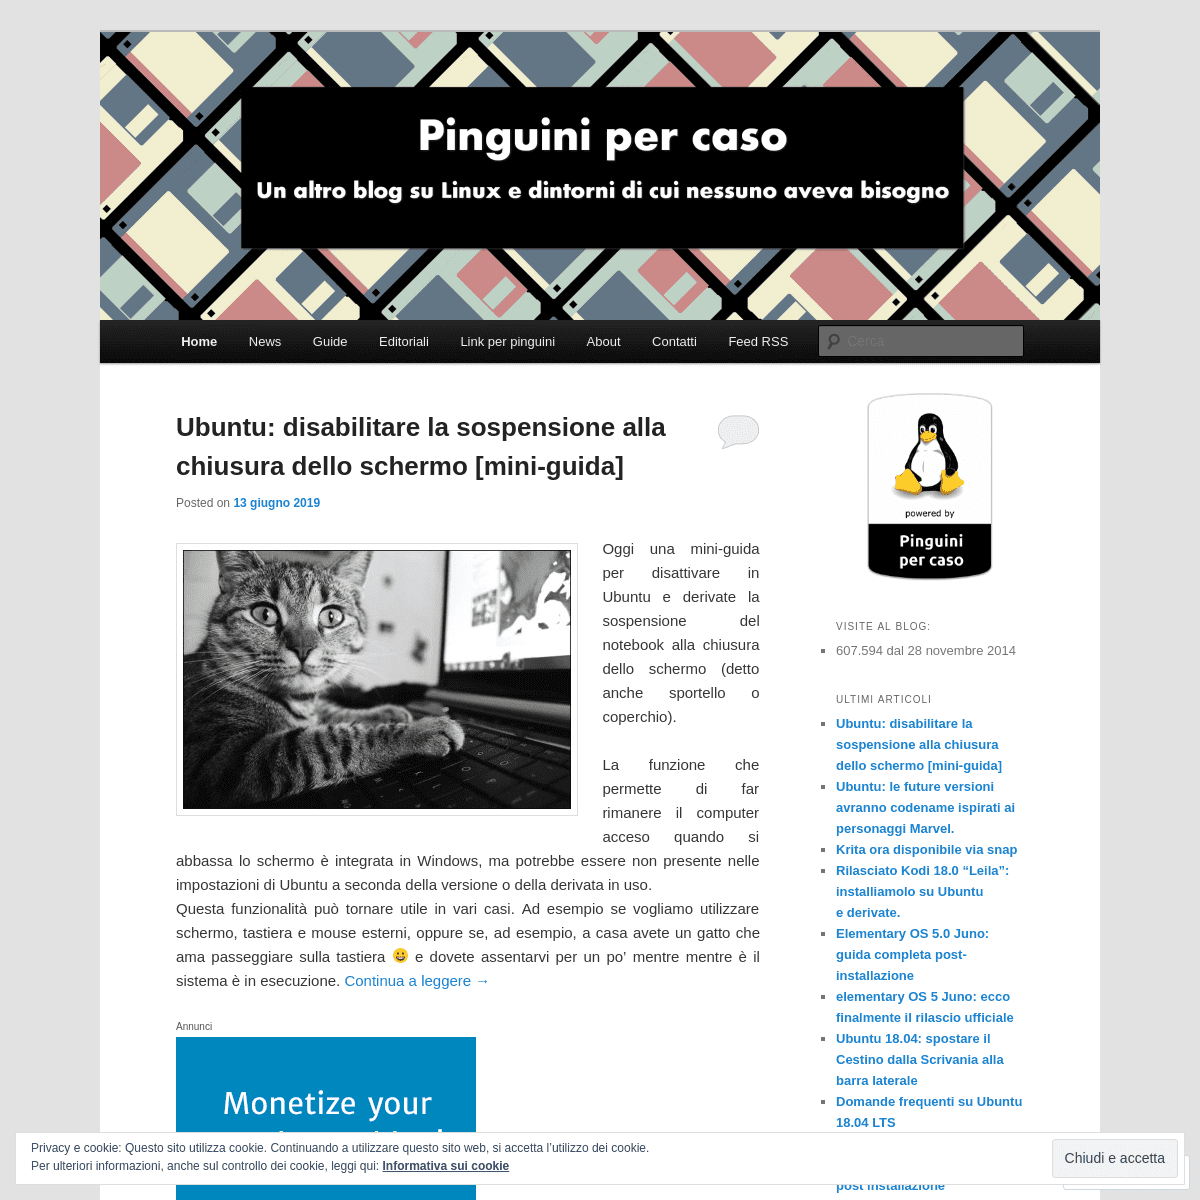 A complete backup of pinguinipercaso.wordpress.com